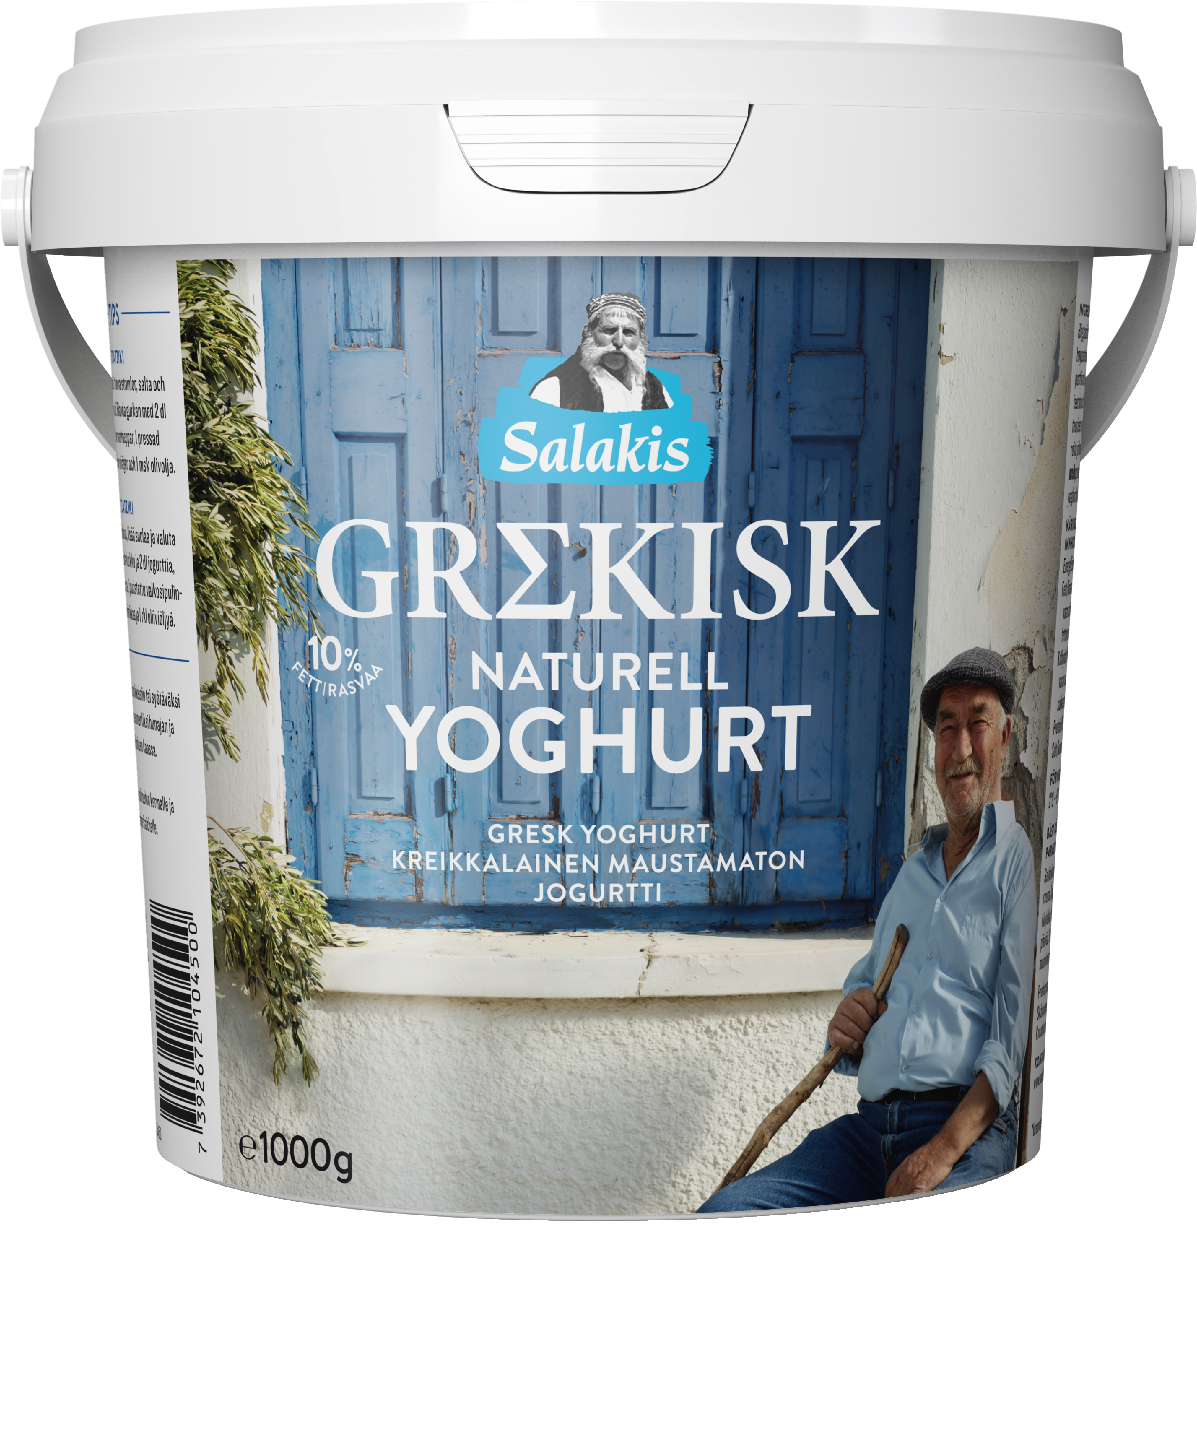 Salakis kreikkalainen maustamaton jogurtti 1kg 10%